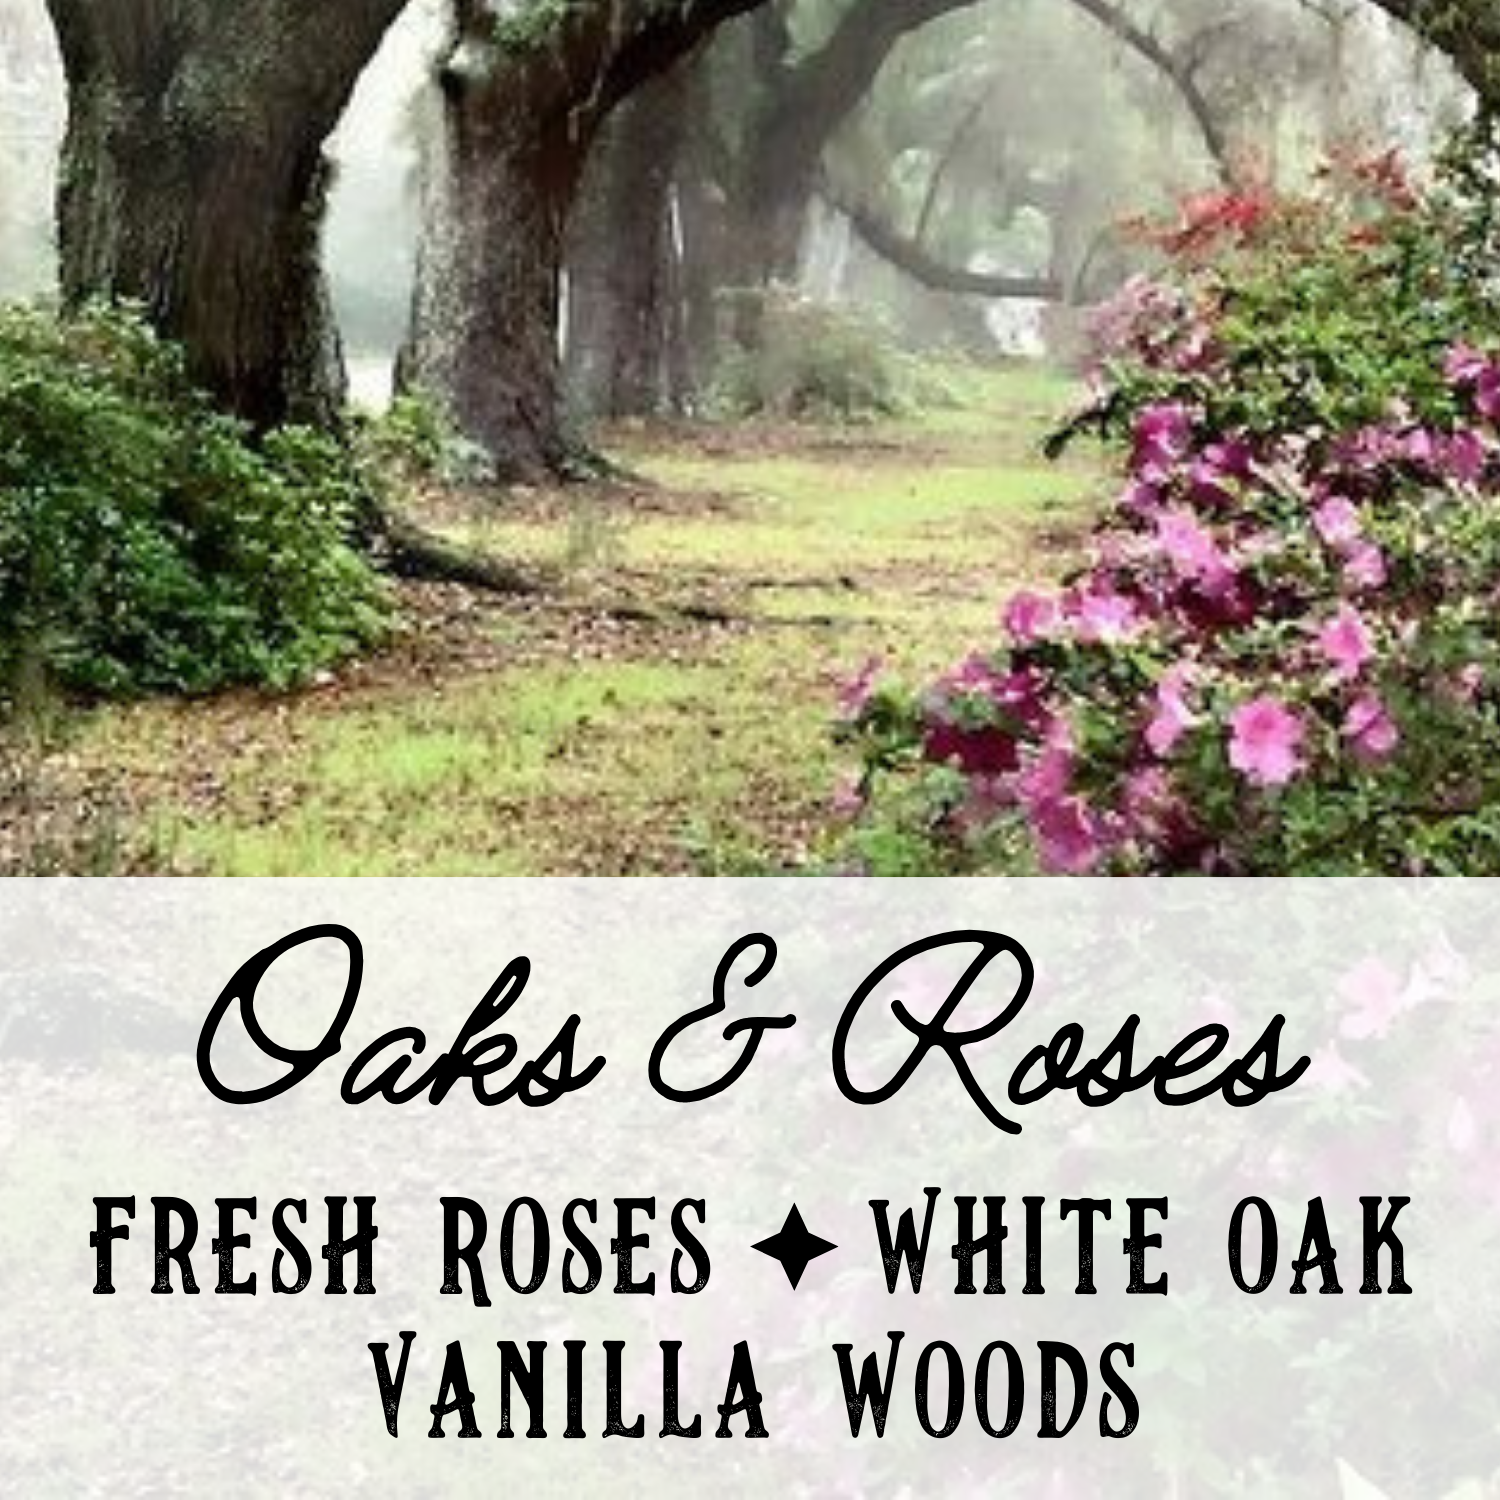 Oaks & Roses Perfume Oil - Birch & Besom